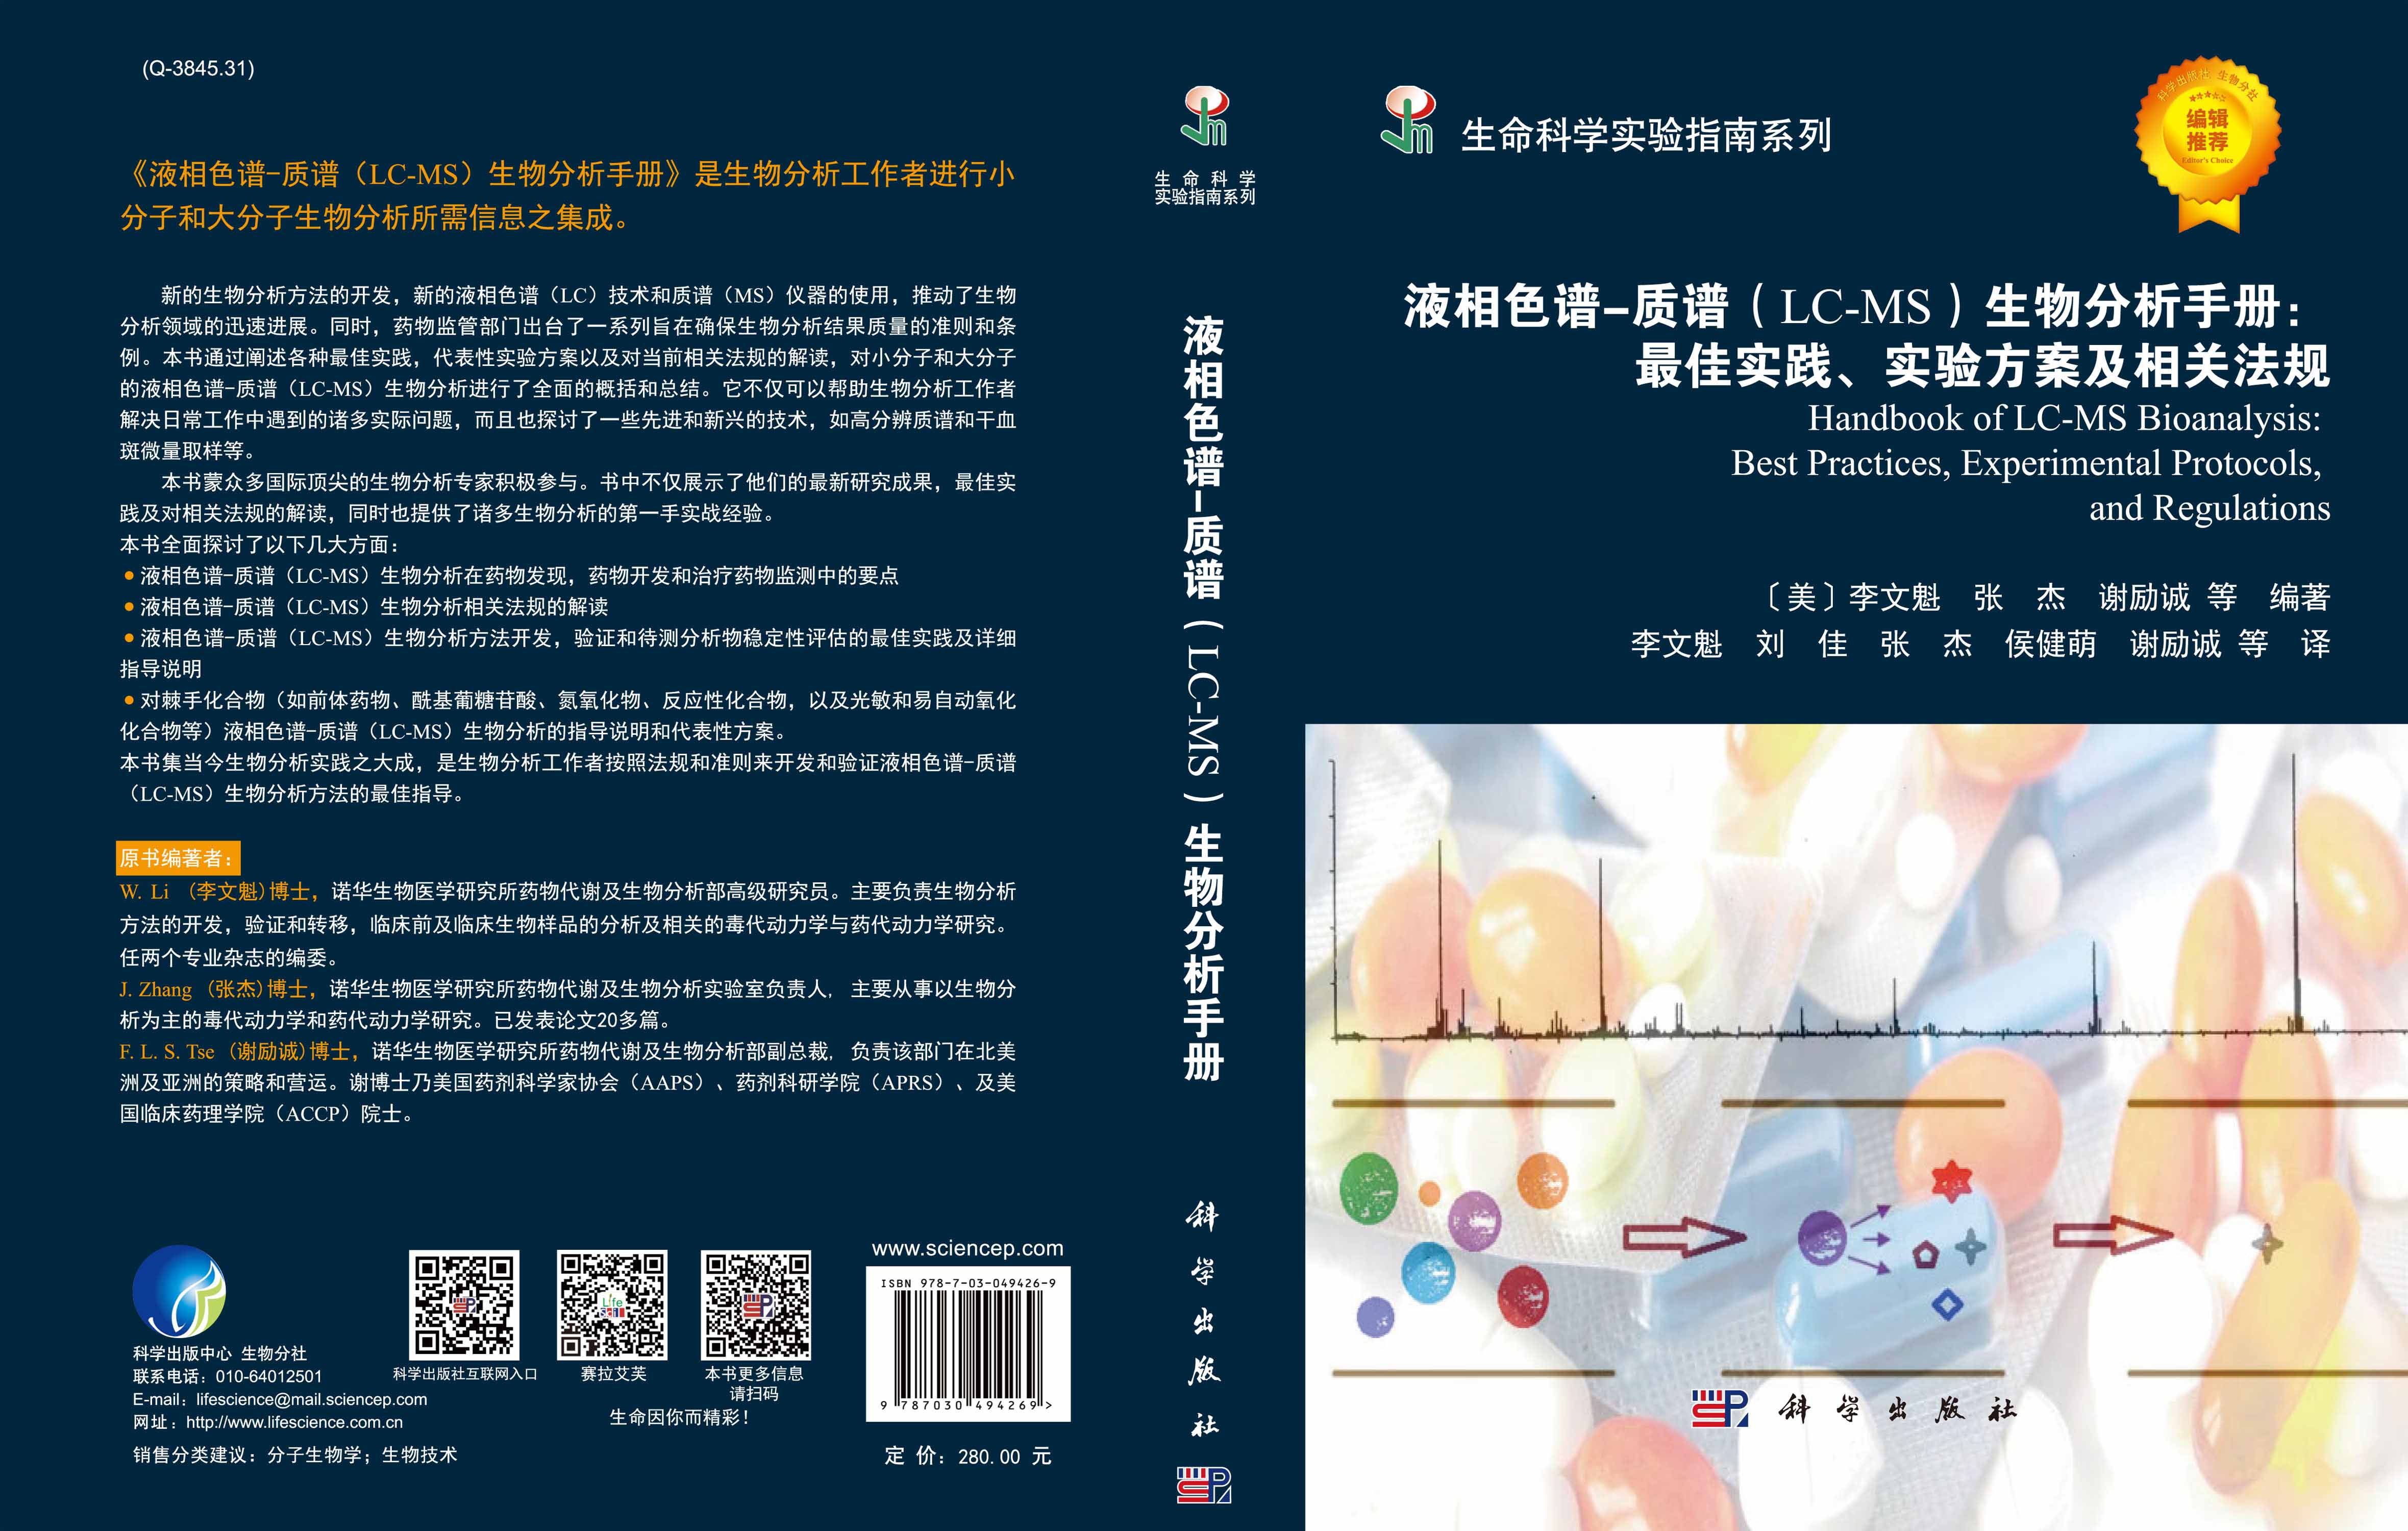 液相色谱-质谱（LC-MS）生物分析手册：最佳实践、实验方案及相关法规